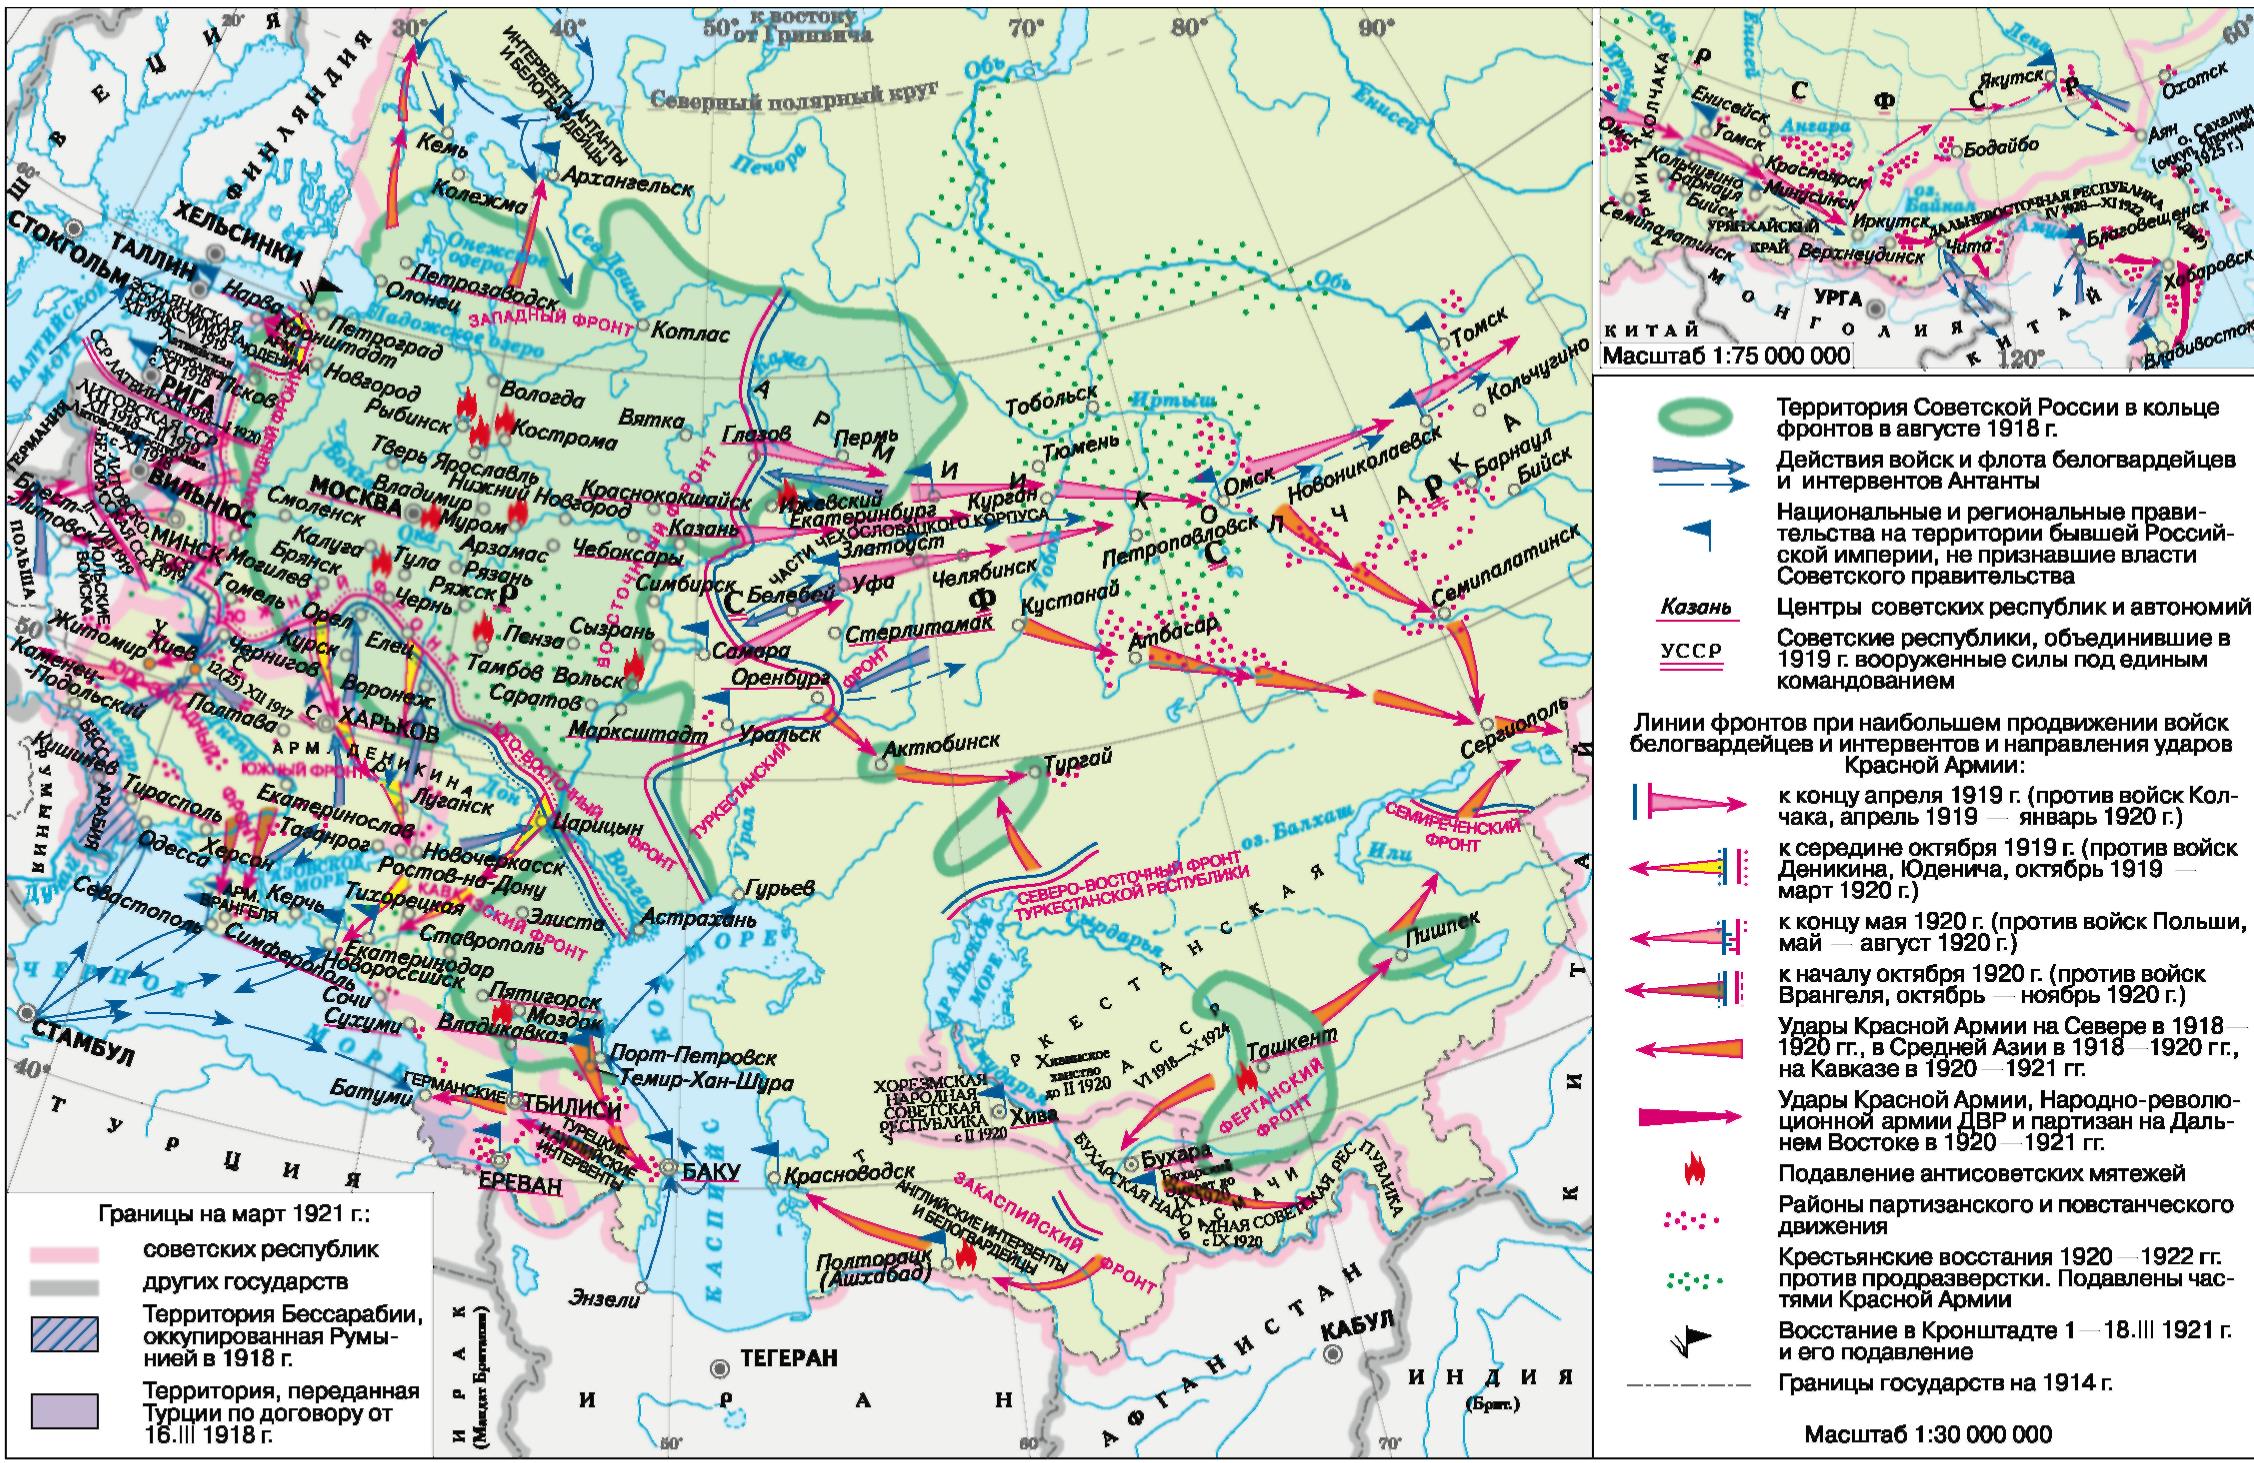 Октябрь 1917 октябрь 1922. Карта гражданской войны в России 1917. Карта гражданской войны и интервенции в России 1917-1922.